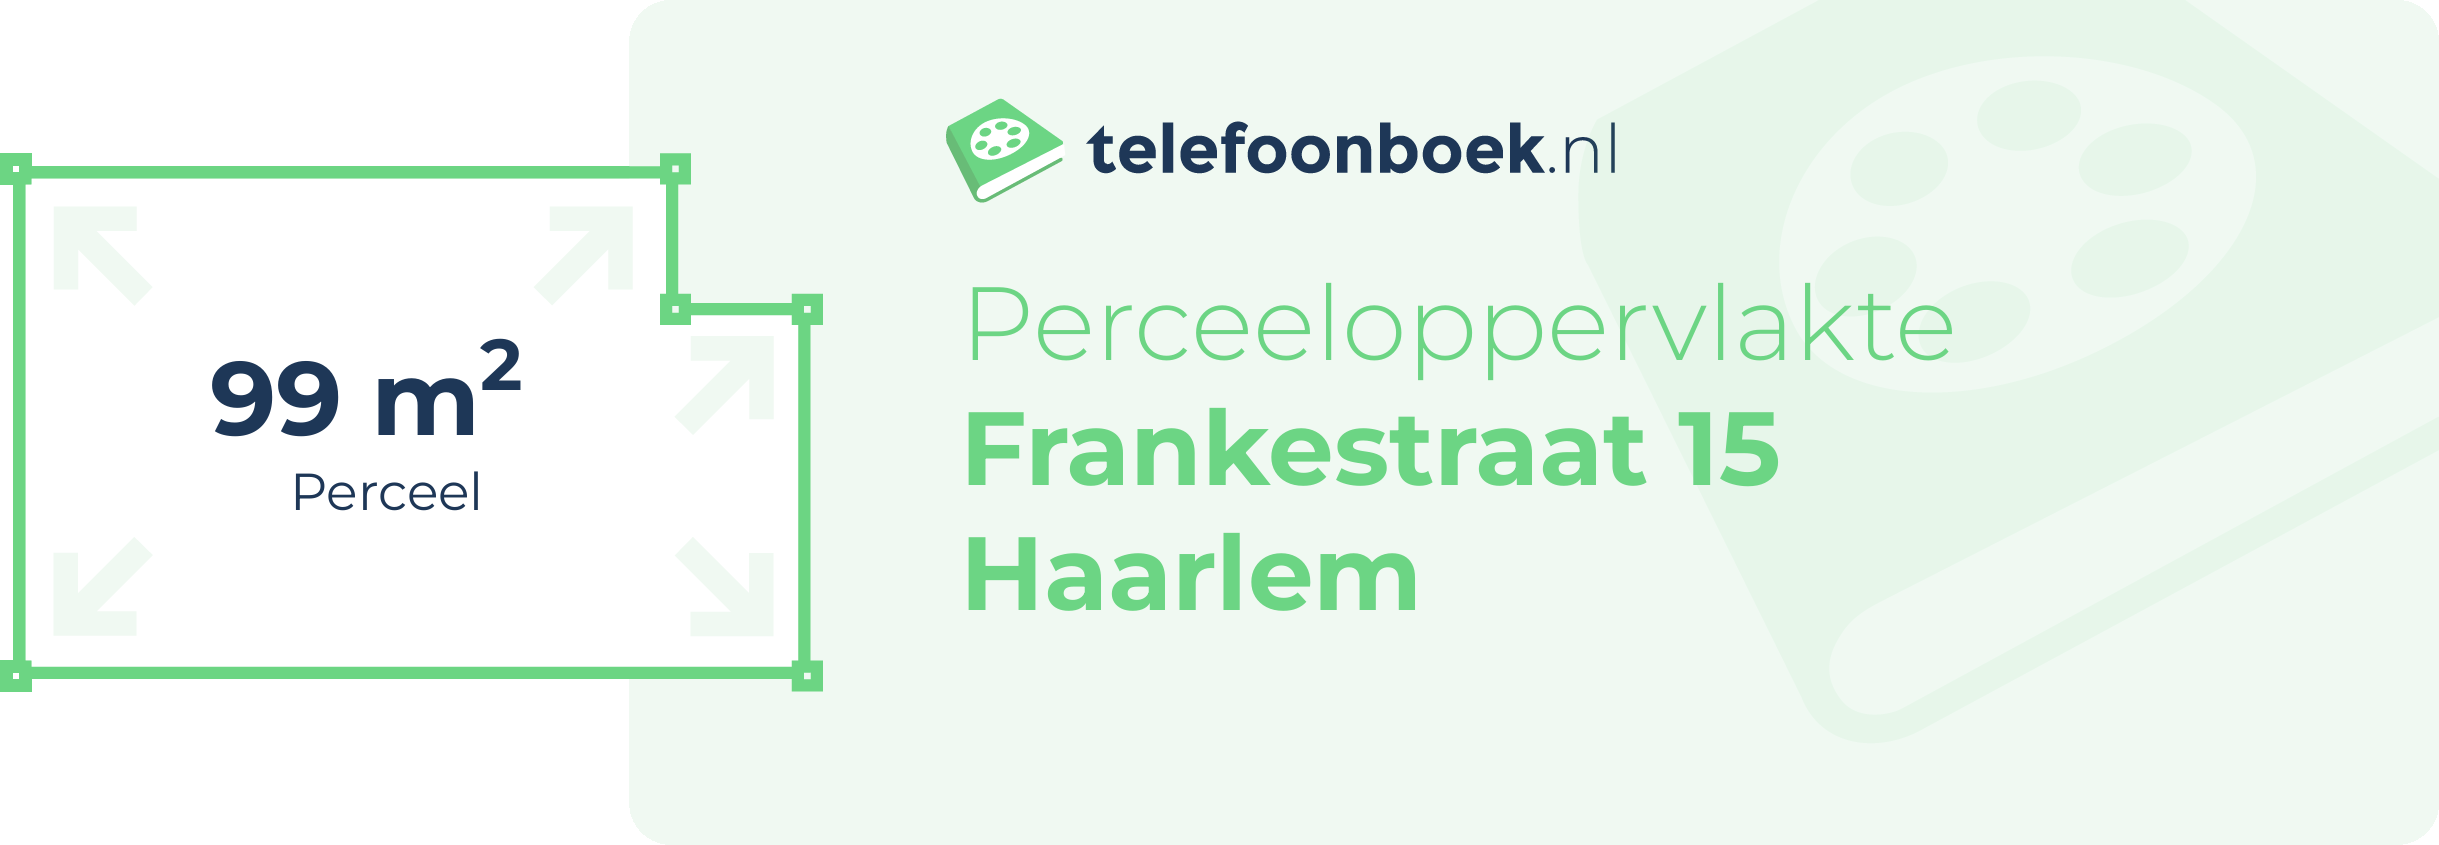 Perceeloppervlakte Frankestraat 15 Haarlem